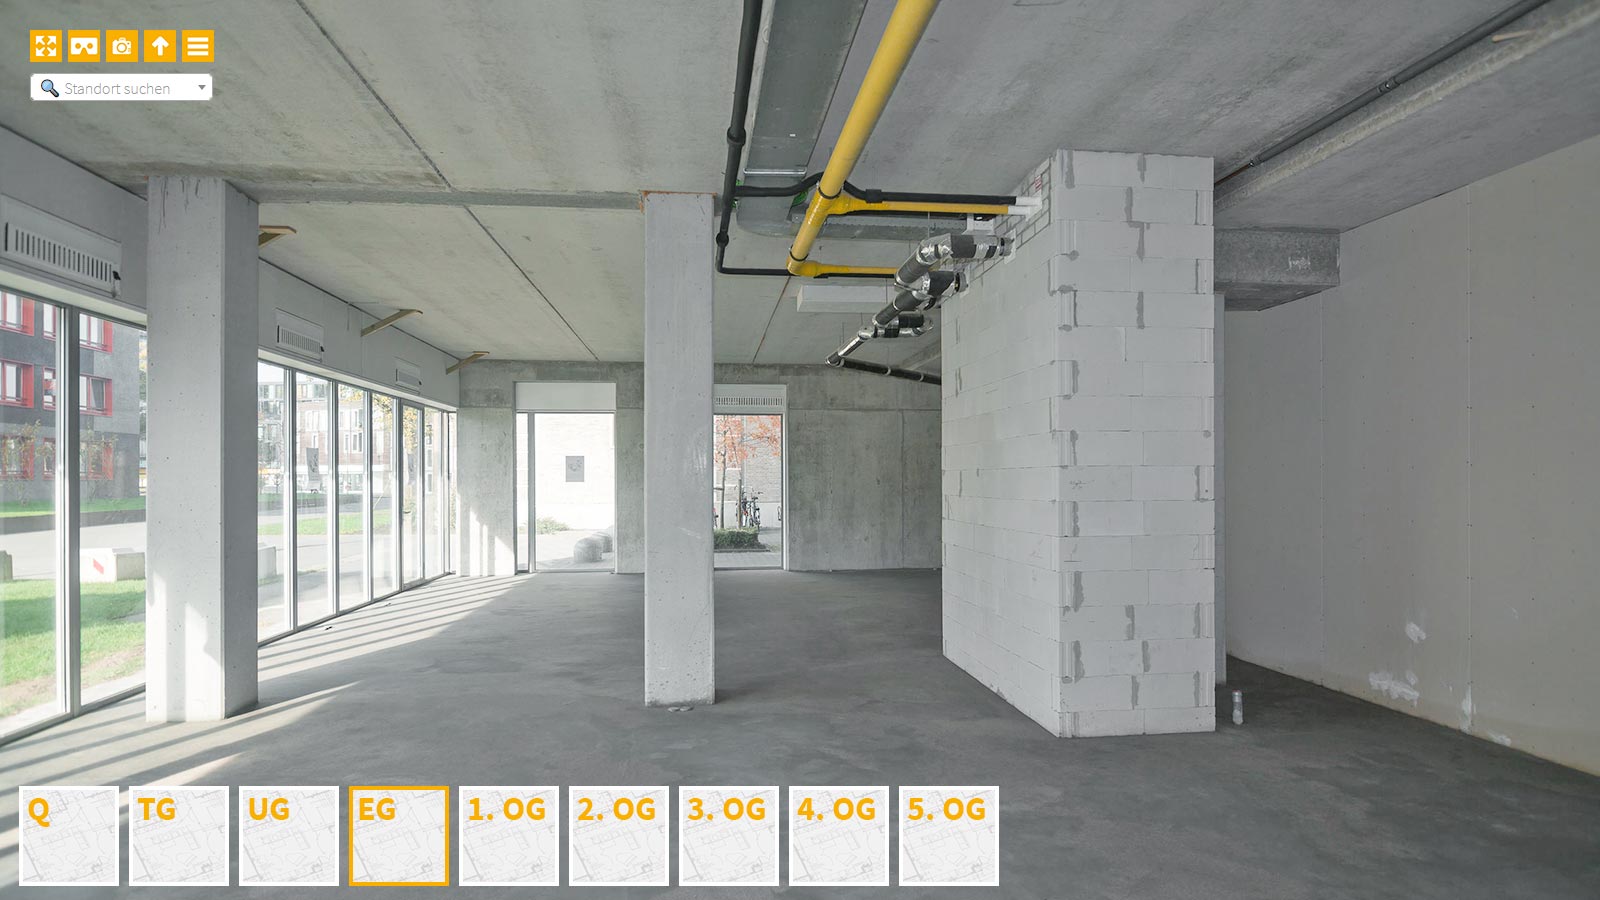 Baudokumentation 360 Grad bei gestörten Projekten in 


	


	


	


	


	


	


	


	


	


	Siegen









, Bilddokumentation als virtueller Rundgang